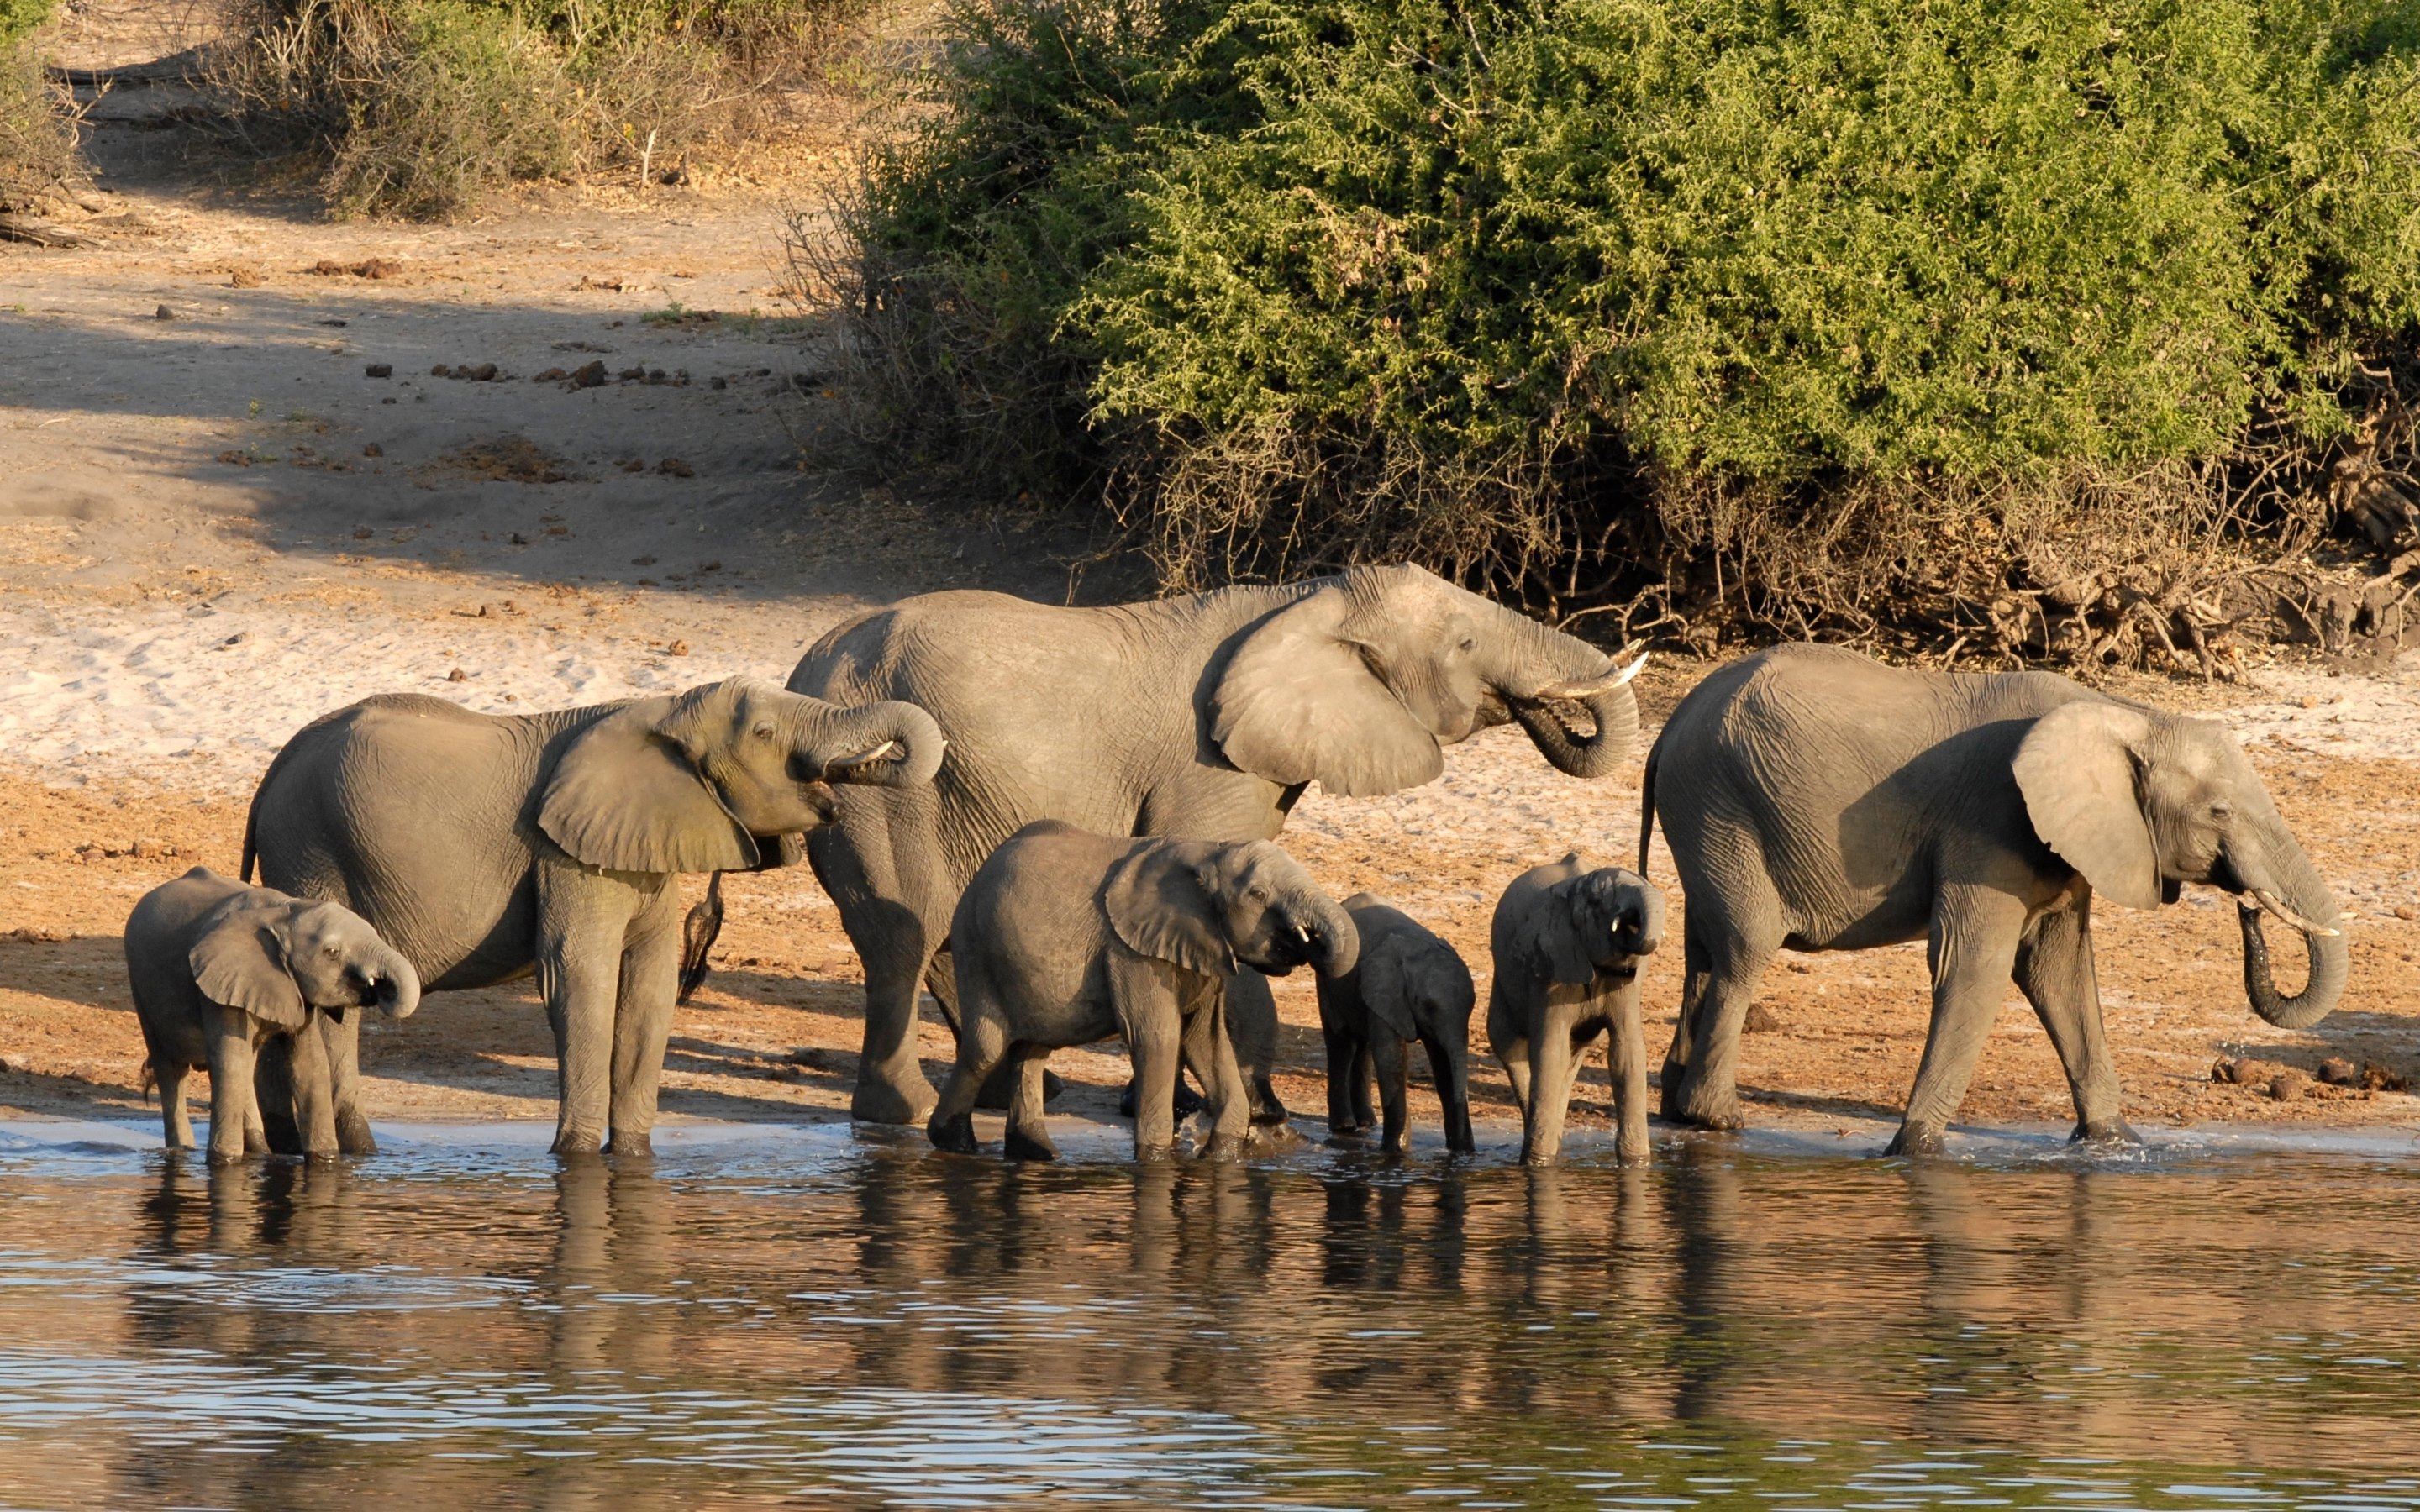 Family of Elephants in Botswana by Herbert Bieser